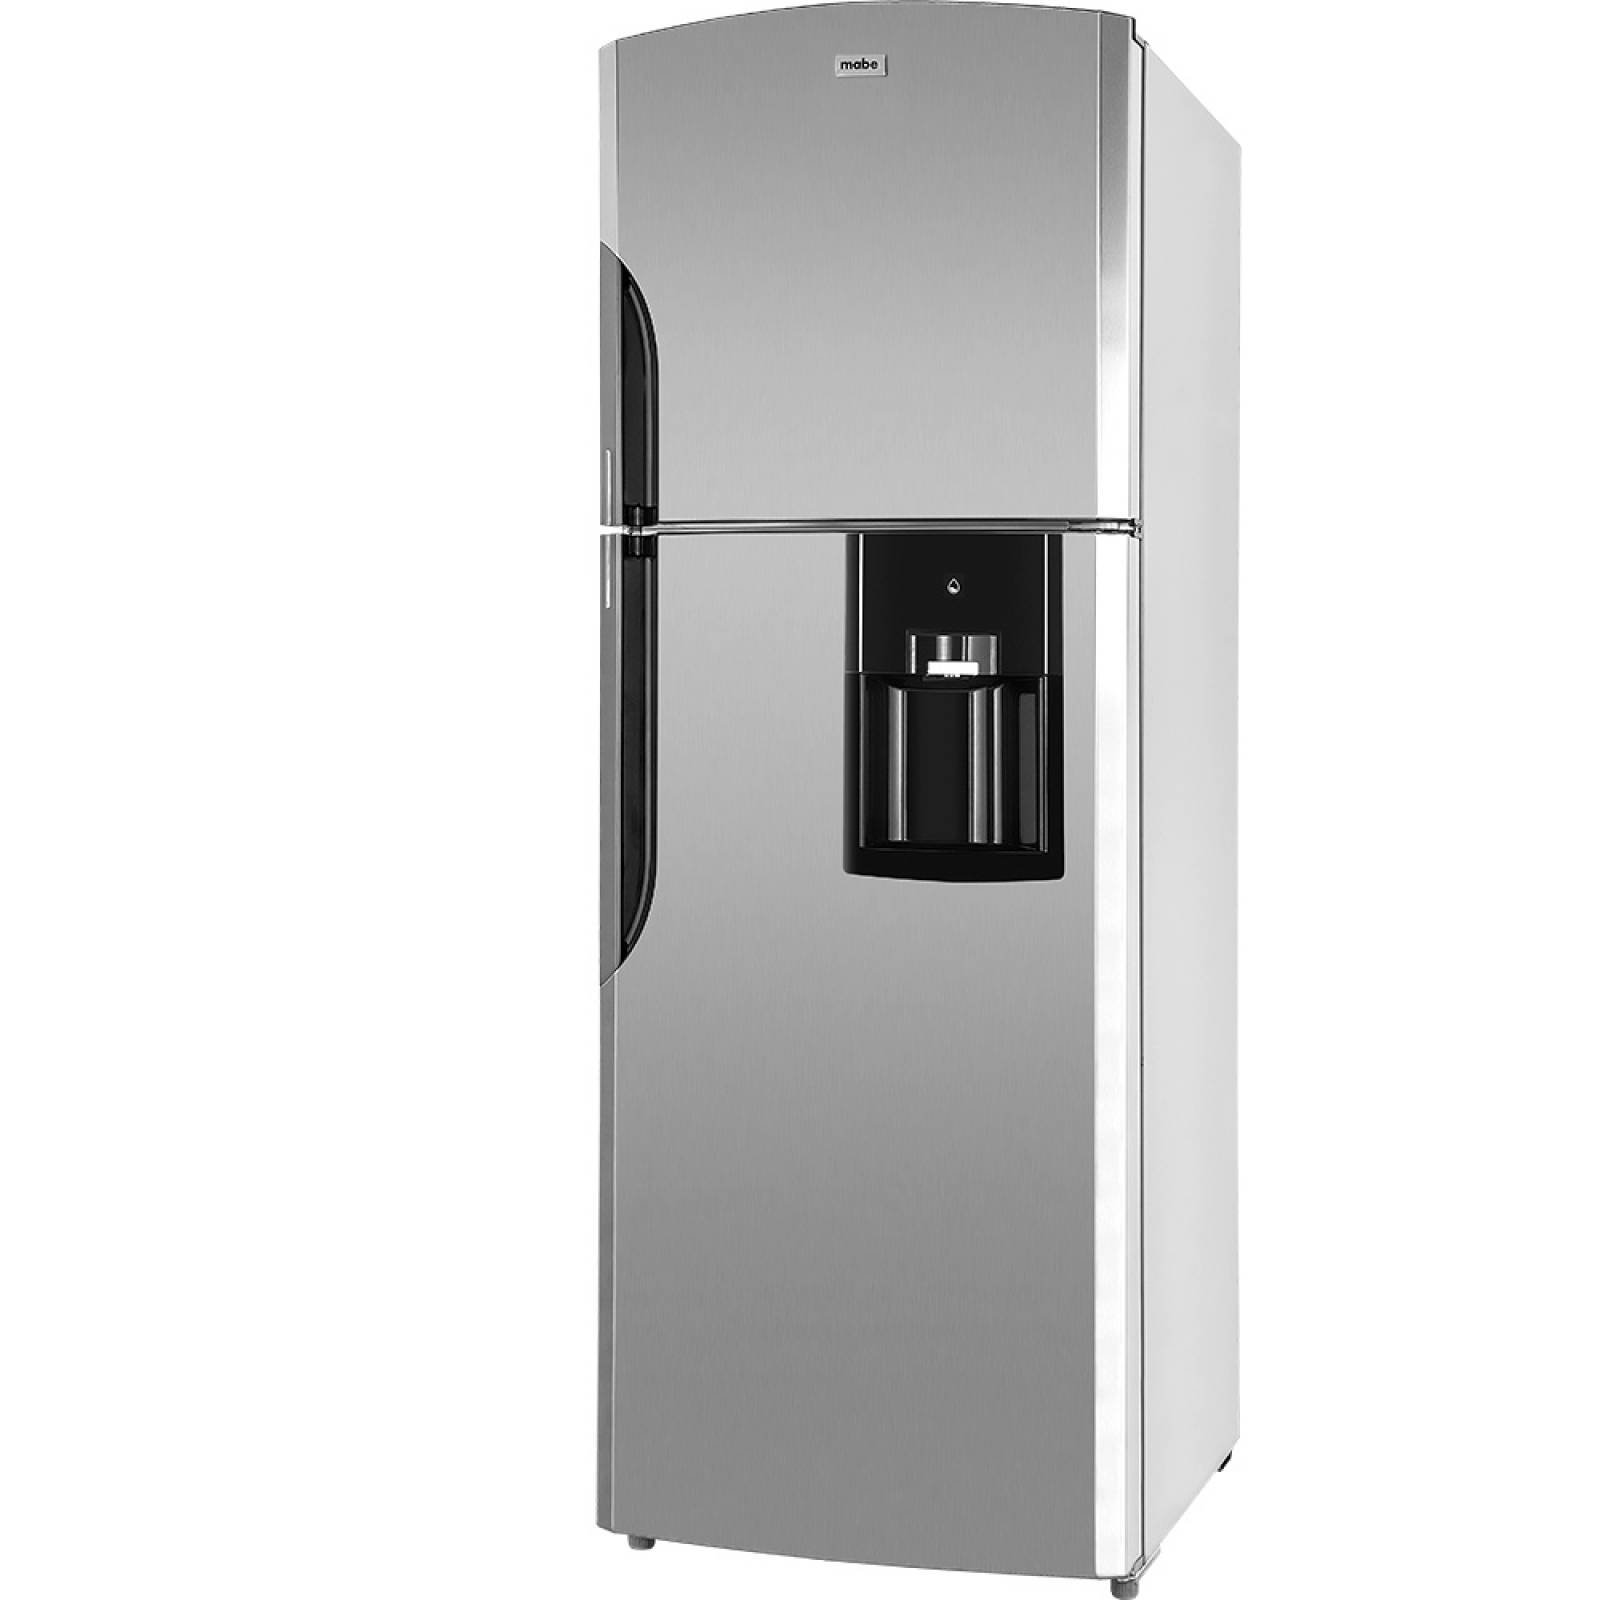 Refrigerador Domestico 2 Puertas 399.95L Inox Acero inoxidable Mabe